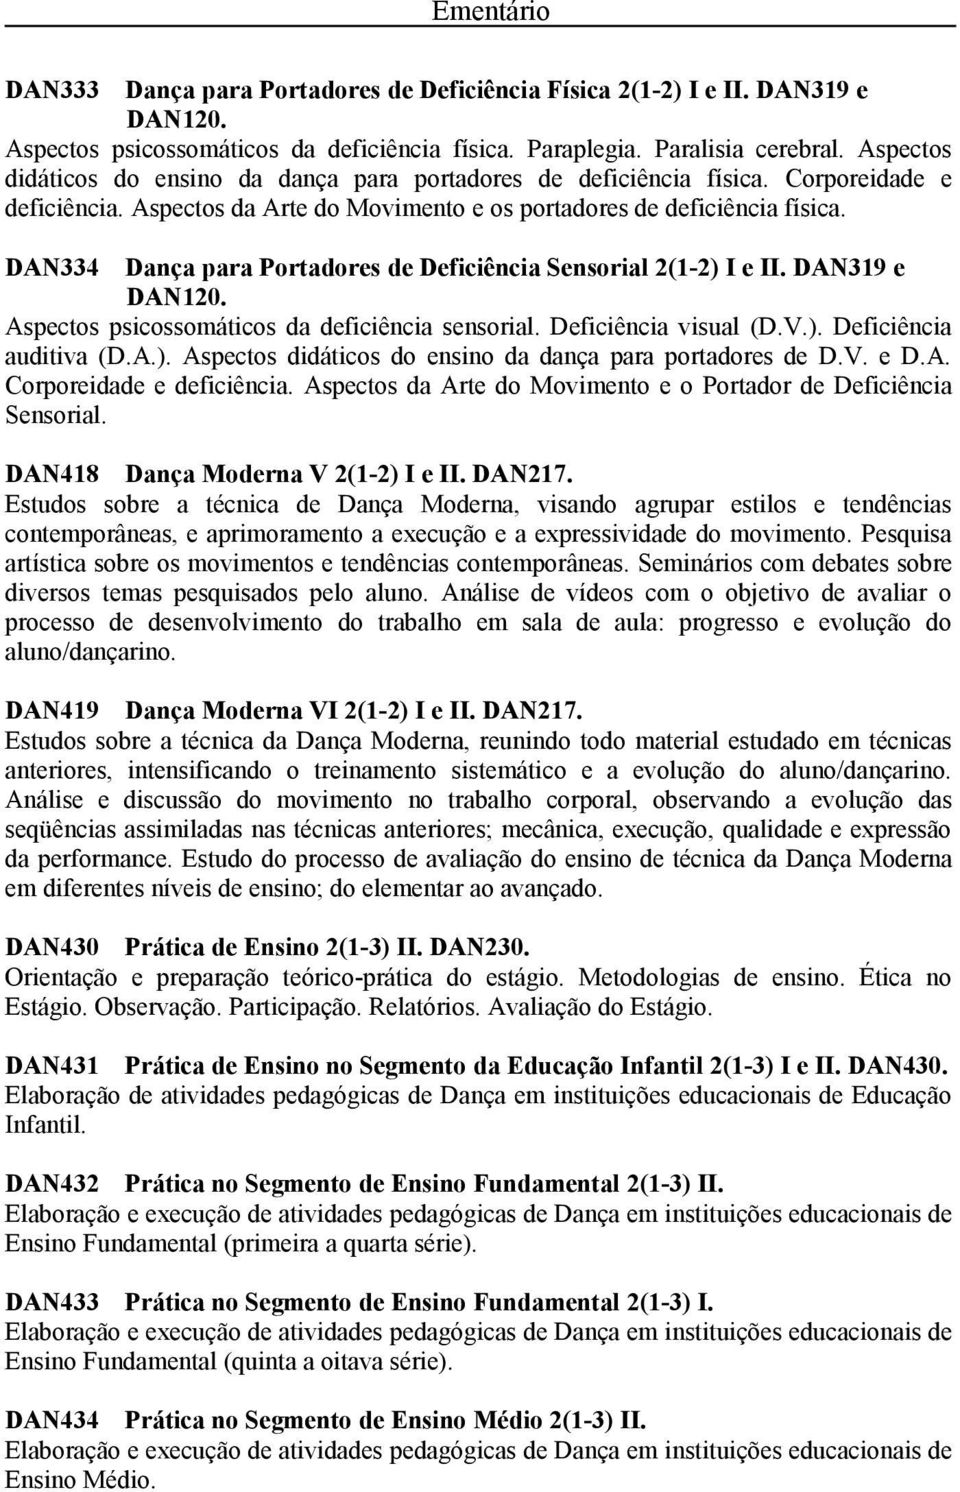 DAN334 Dança para Portadores de Deficiência Sensorial 2(1-2) I e II. DAN319 e DAN120. Aspectos psicossomáticos da deficiência sensorial. Deficiência visual (D.V.). Deficiência auditiva (D.A.). Aspectos didáticos do ensino da dança para portadores de D.